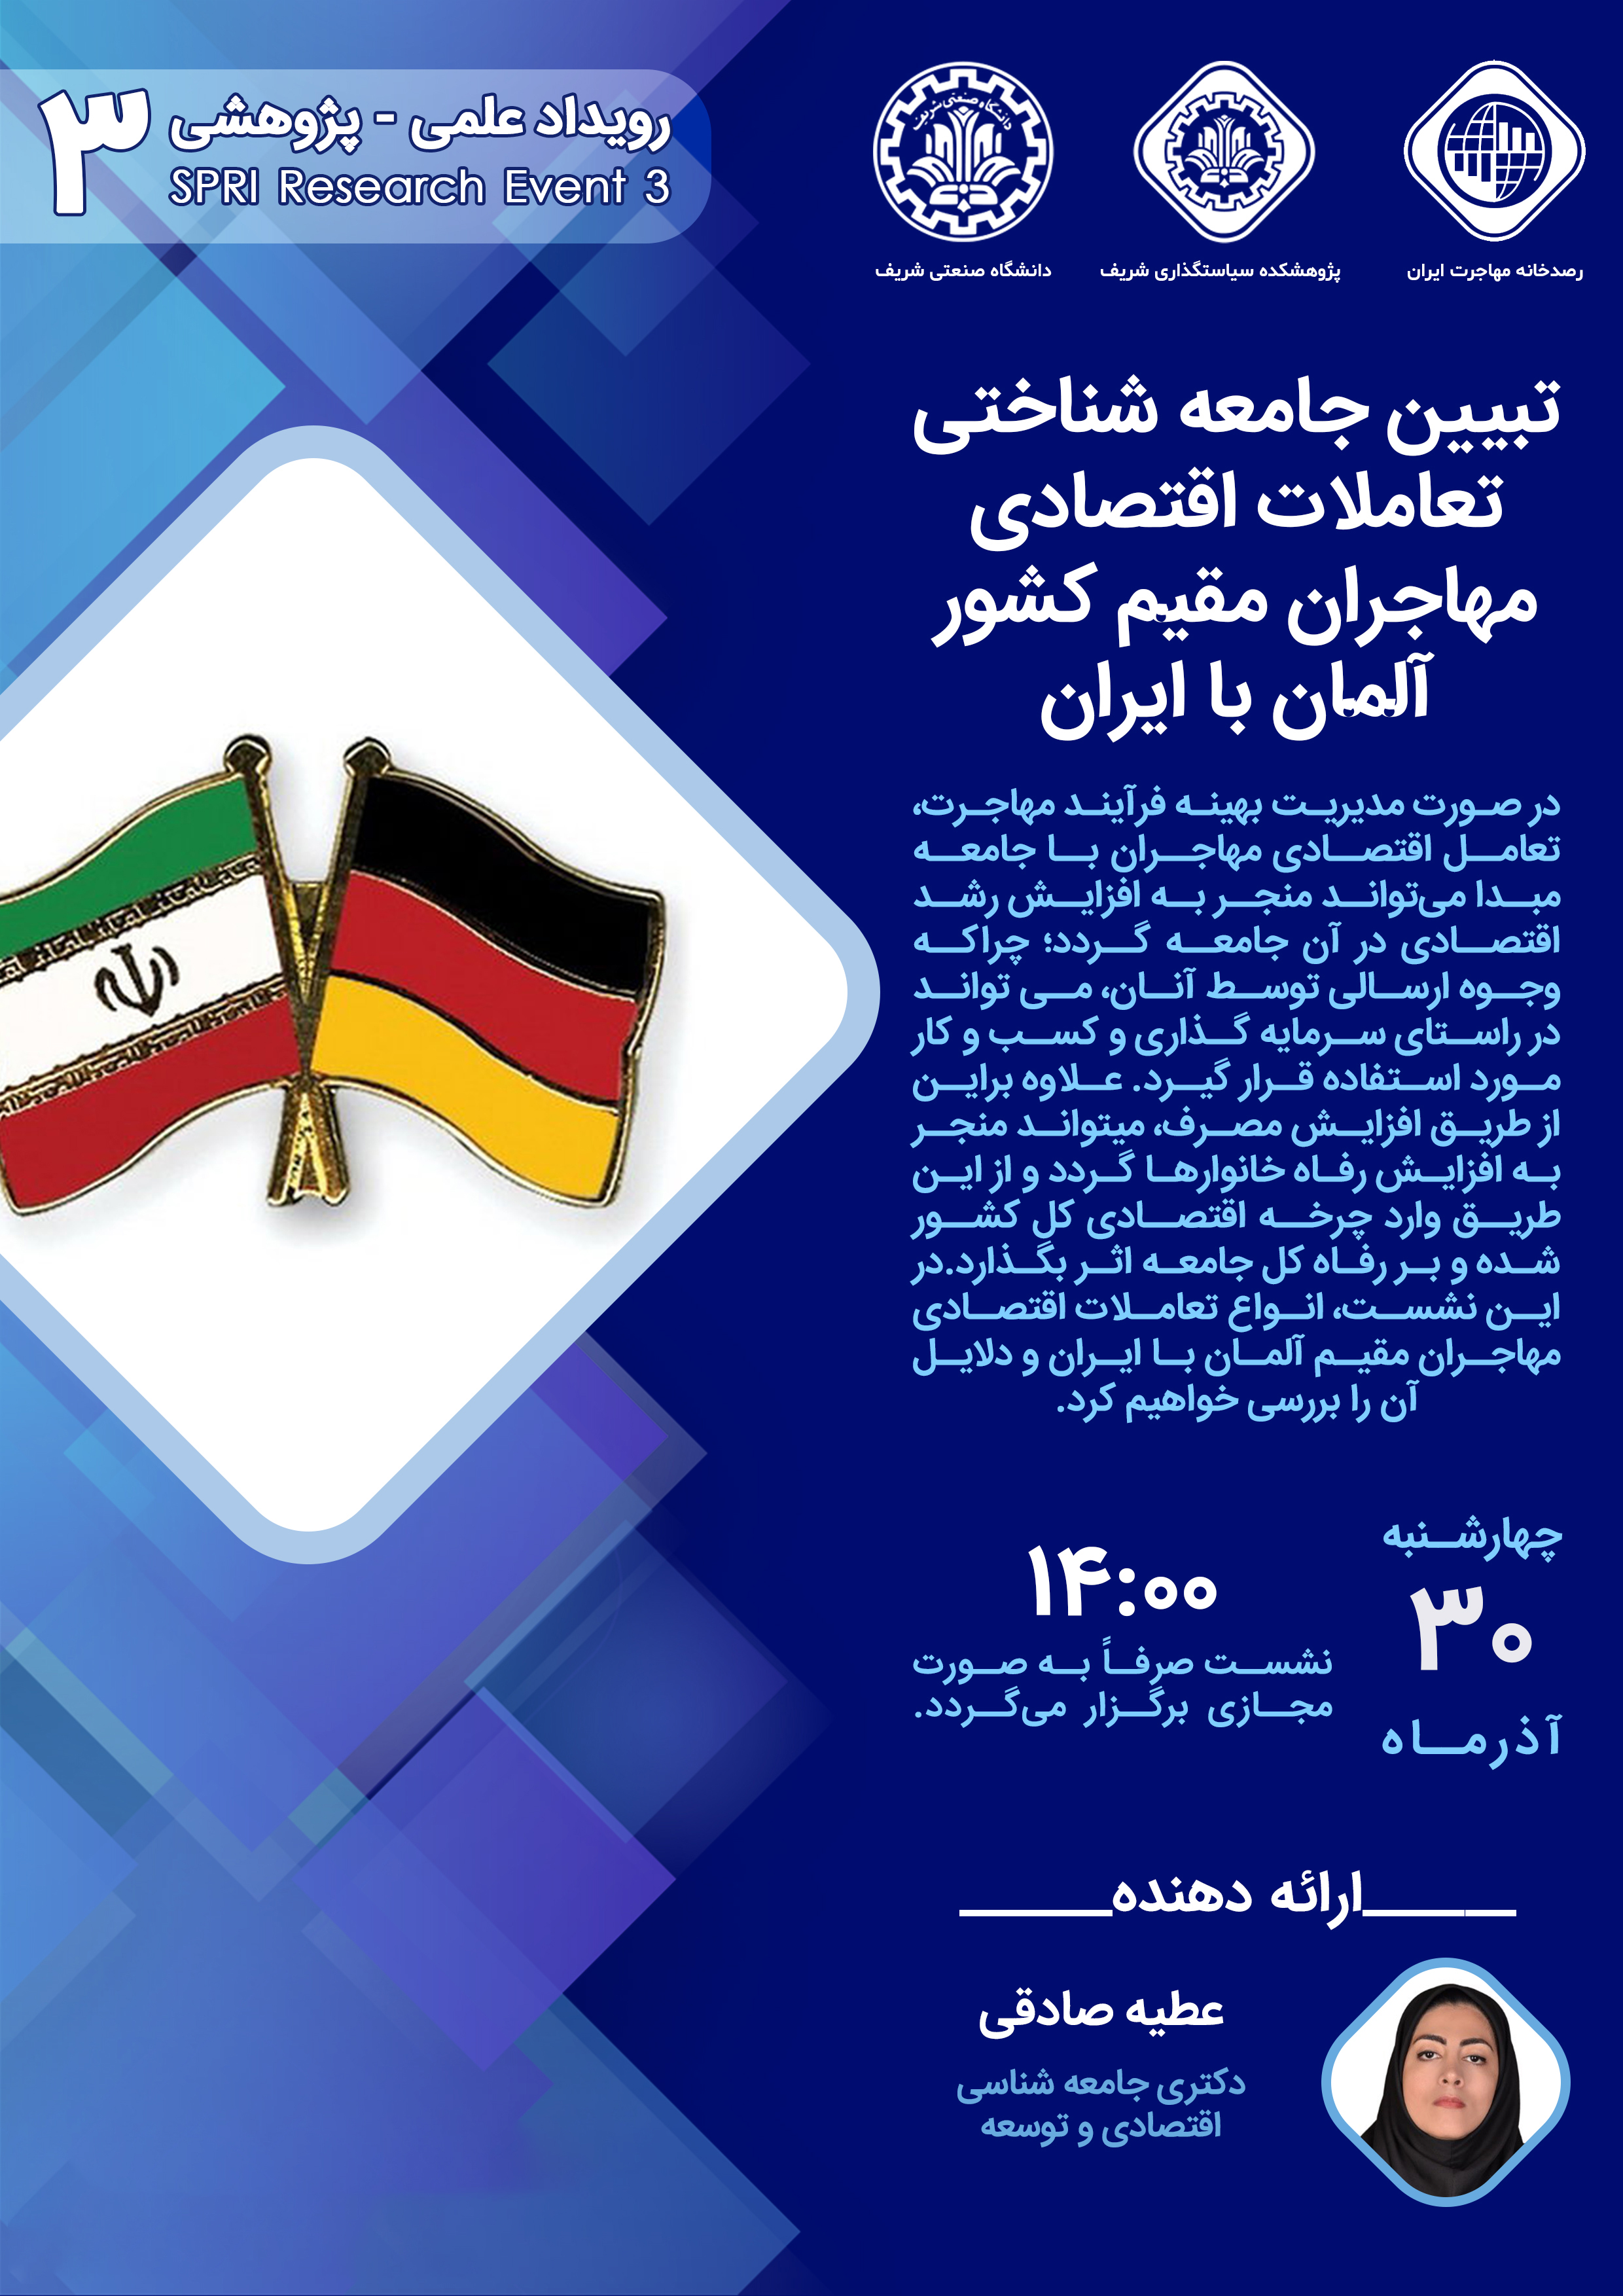 تبیین جامعه شناختی تعاملات اقتصادی مهاجران مقیم کشور آلمان با ایران